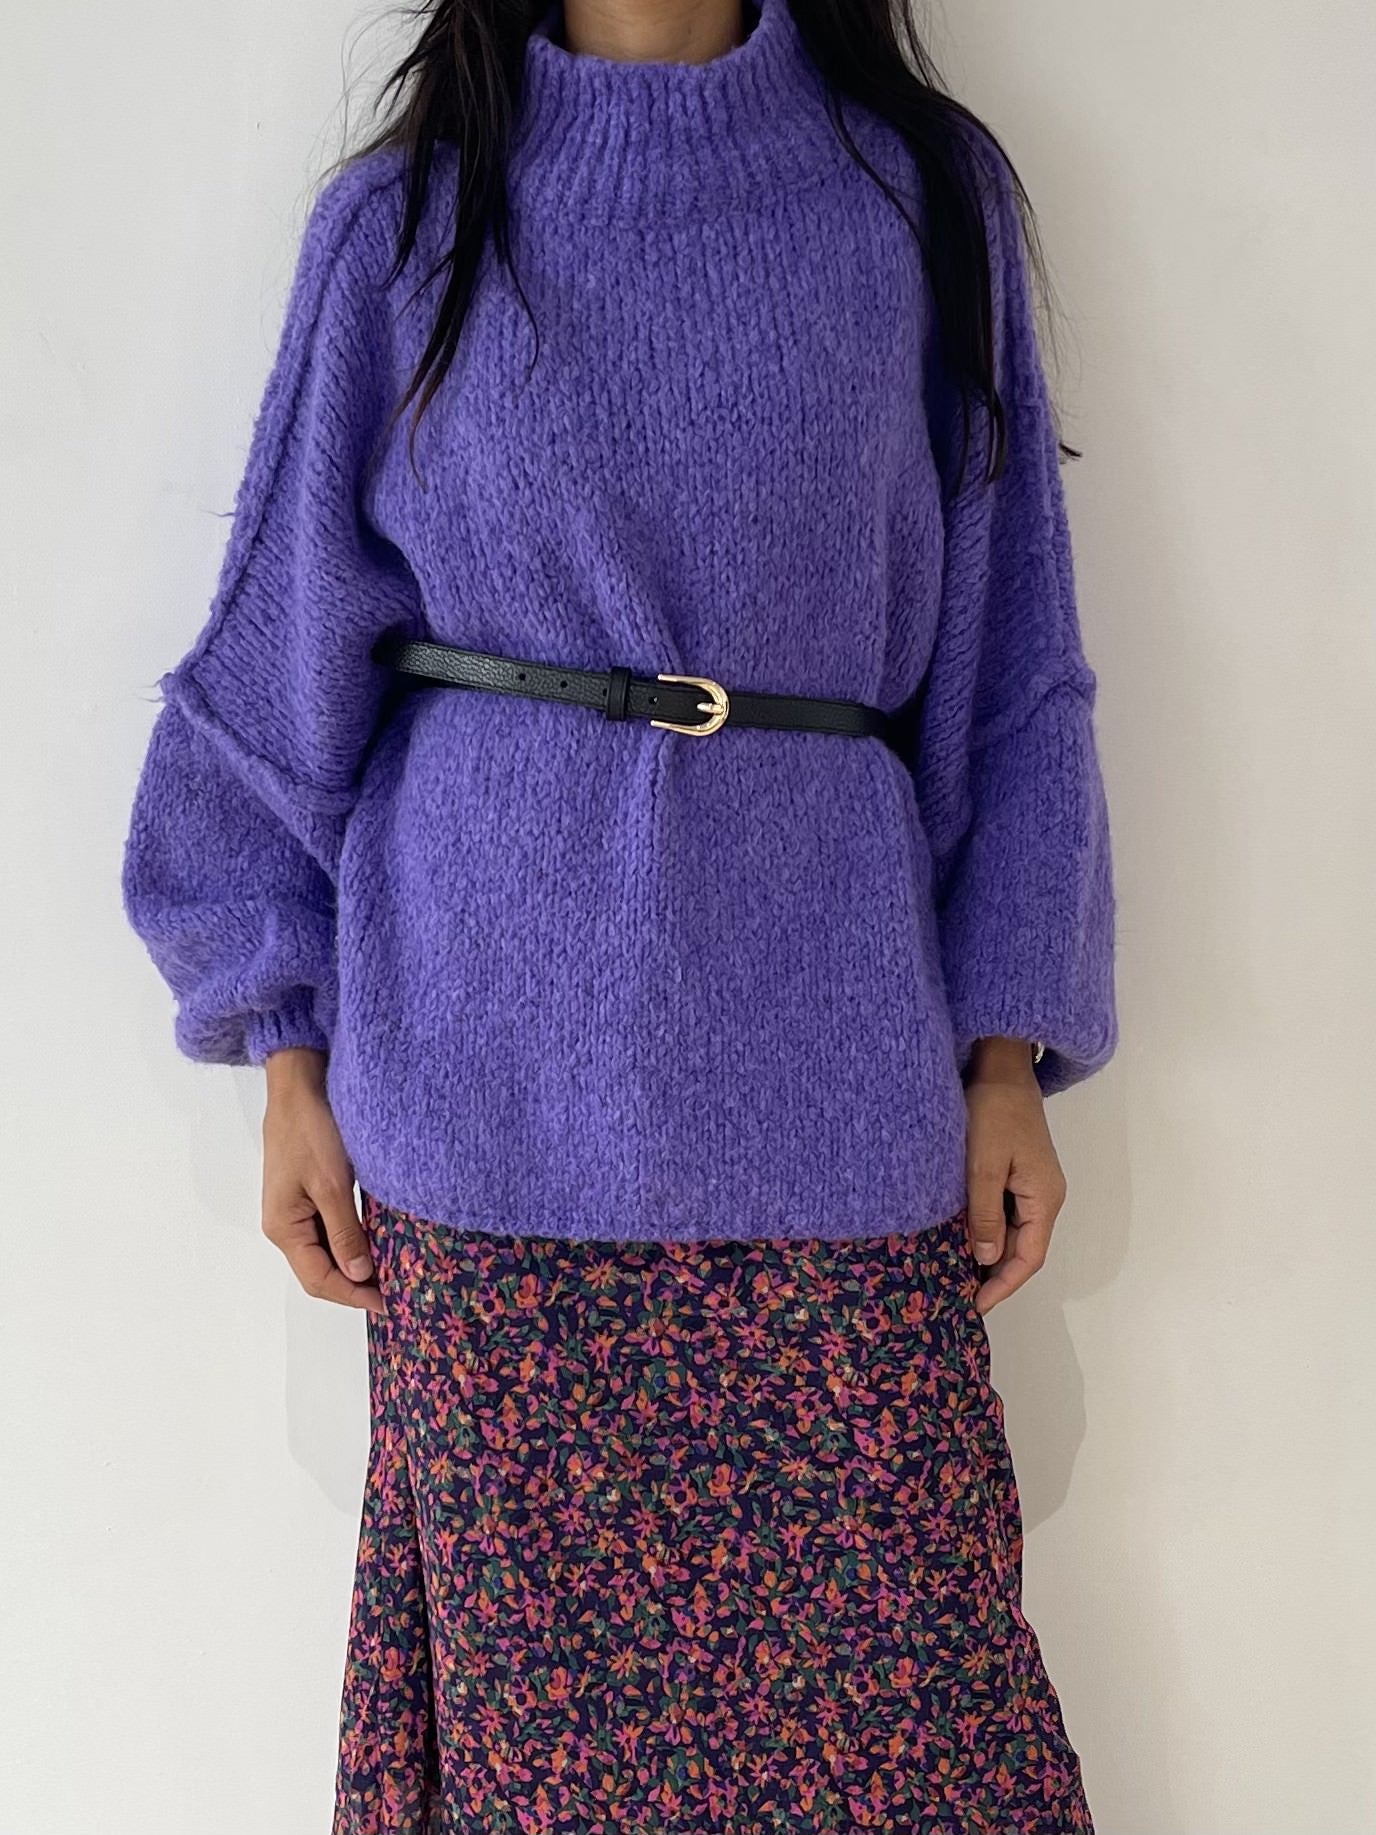 Silhouette audacieuse avec pull oversize en laine violet ceinturé